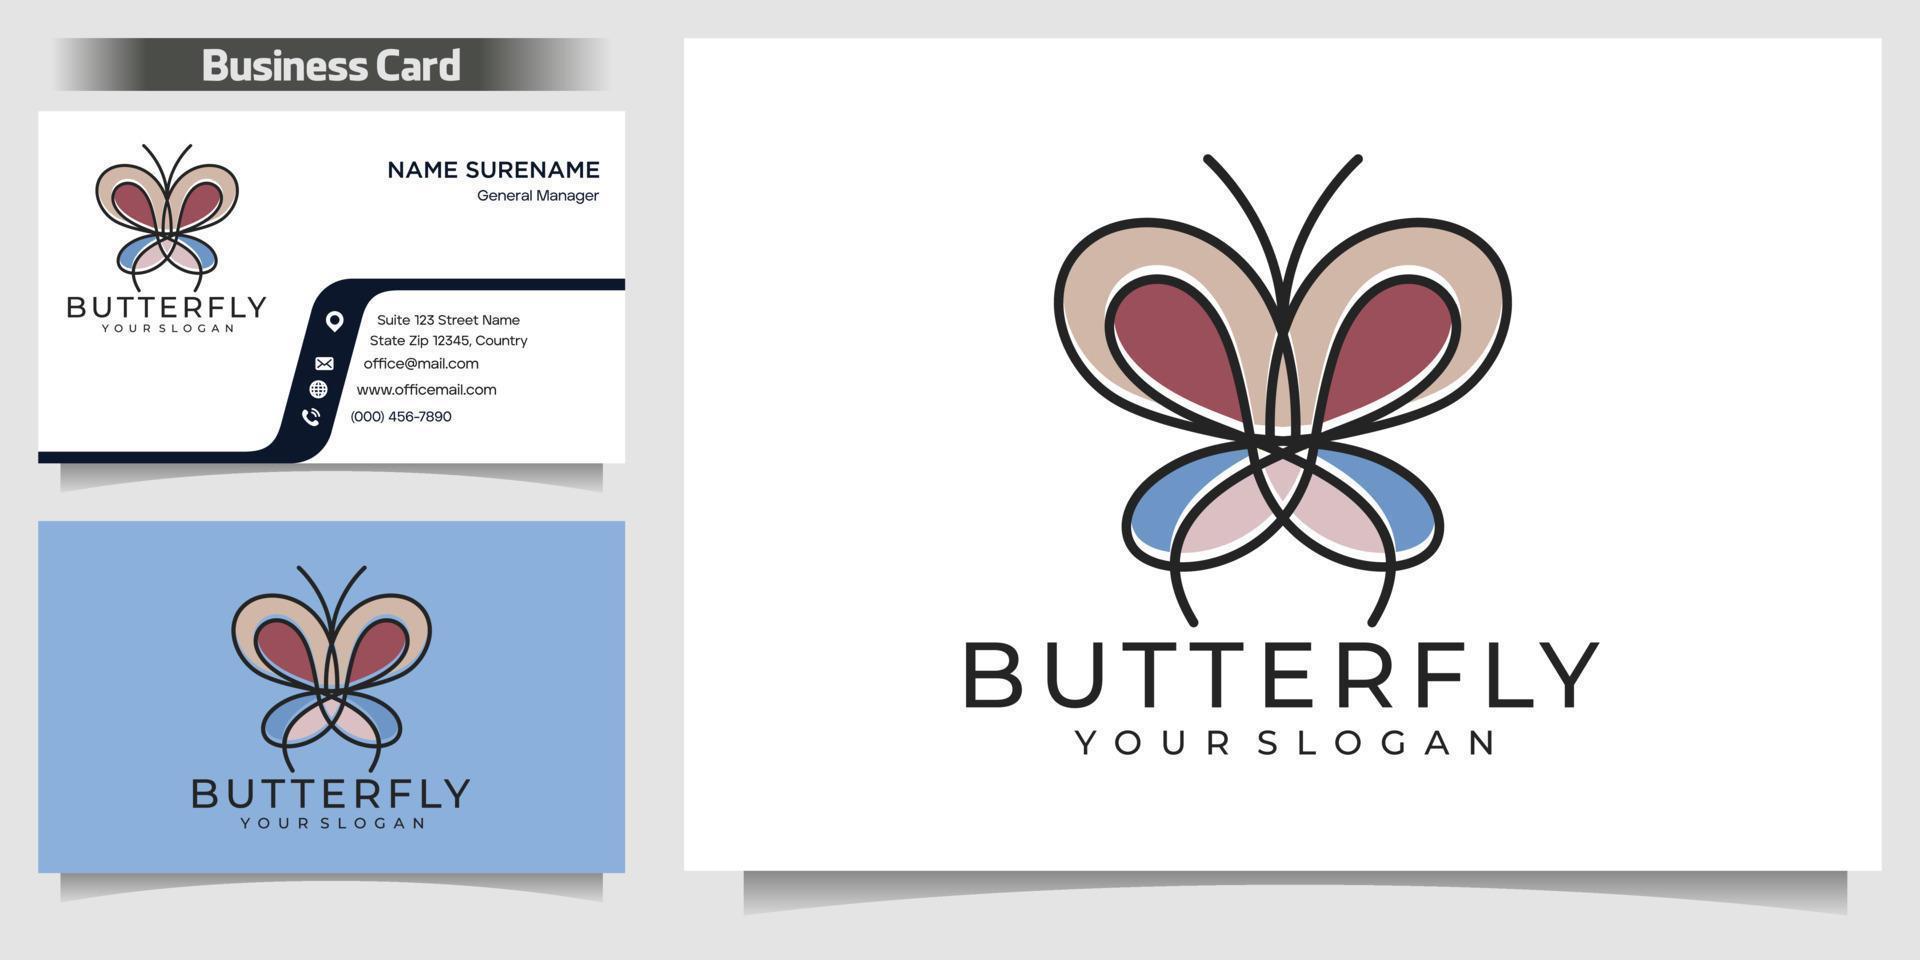 ilustração de ícone monoline de contorno de linha de vetor de logotipo de borboleta